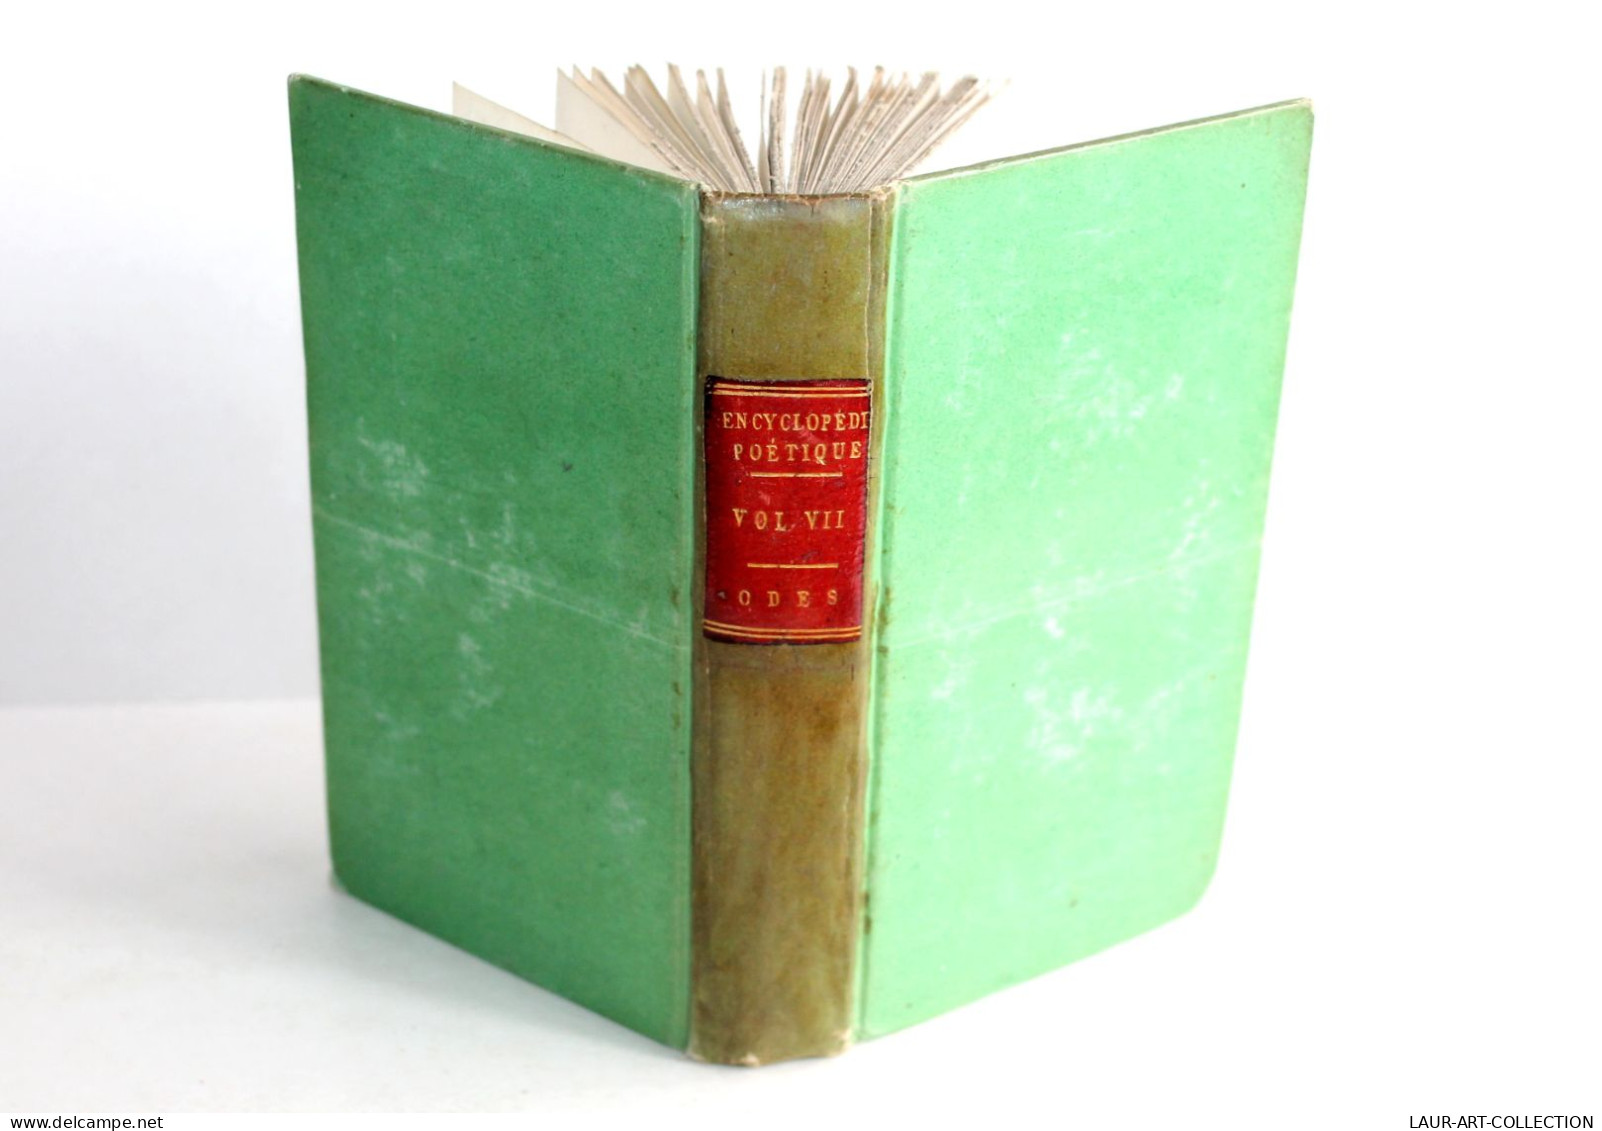 PETITE ENCYCLOPEDIE POETIQUE CHOIX POESIES TOUS GENRES CONTENANT 50 ODES 1804 T7 / ANCIEN LIVRE XIXe SIECLE (1803.184) - French Authors